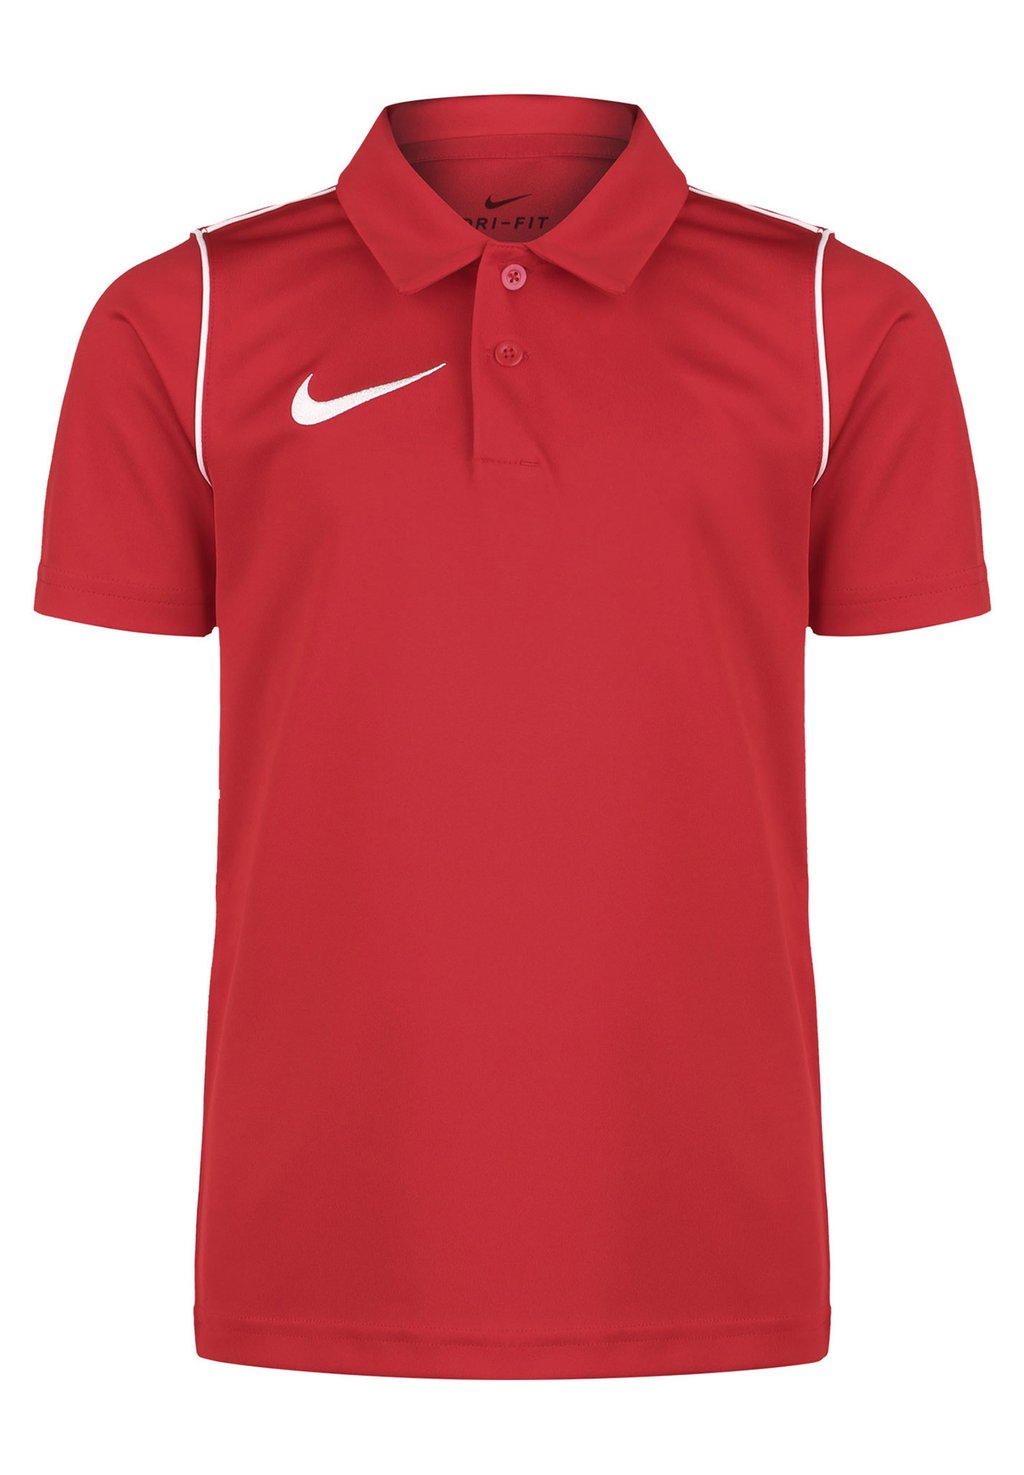 Спортивная футболка PARK Nike, цвет university red / white спортивная футболка df unisex nike цвет university red white